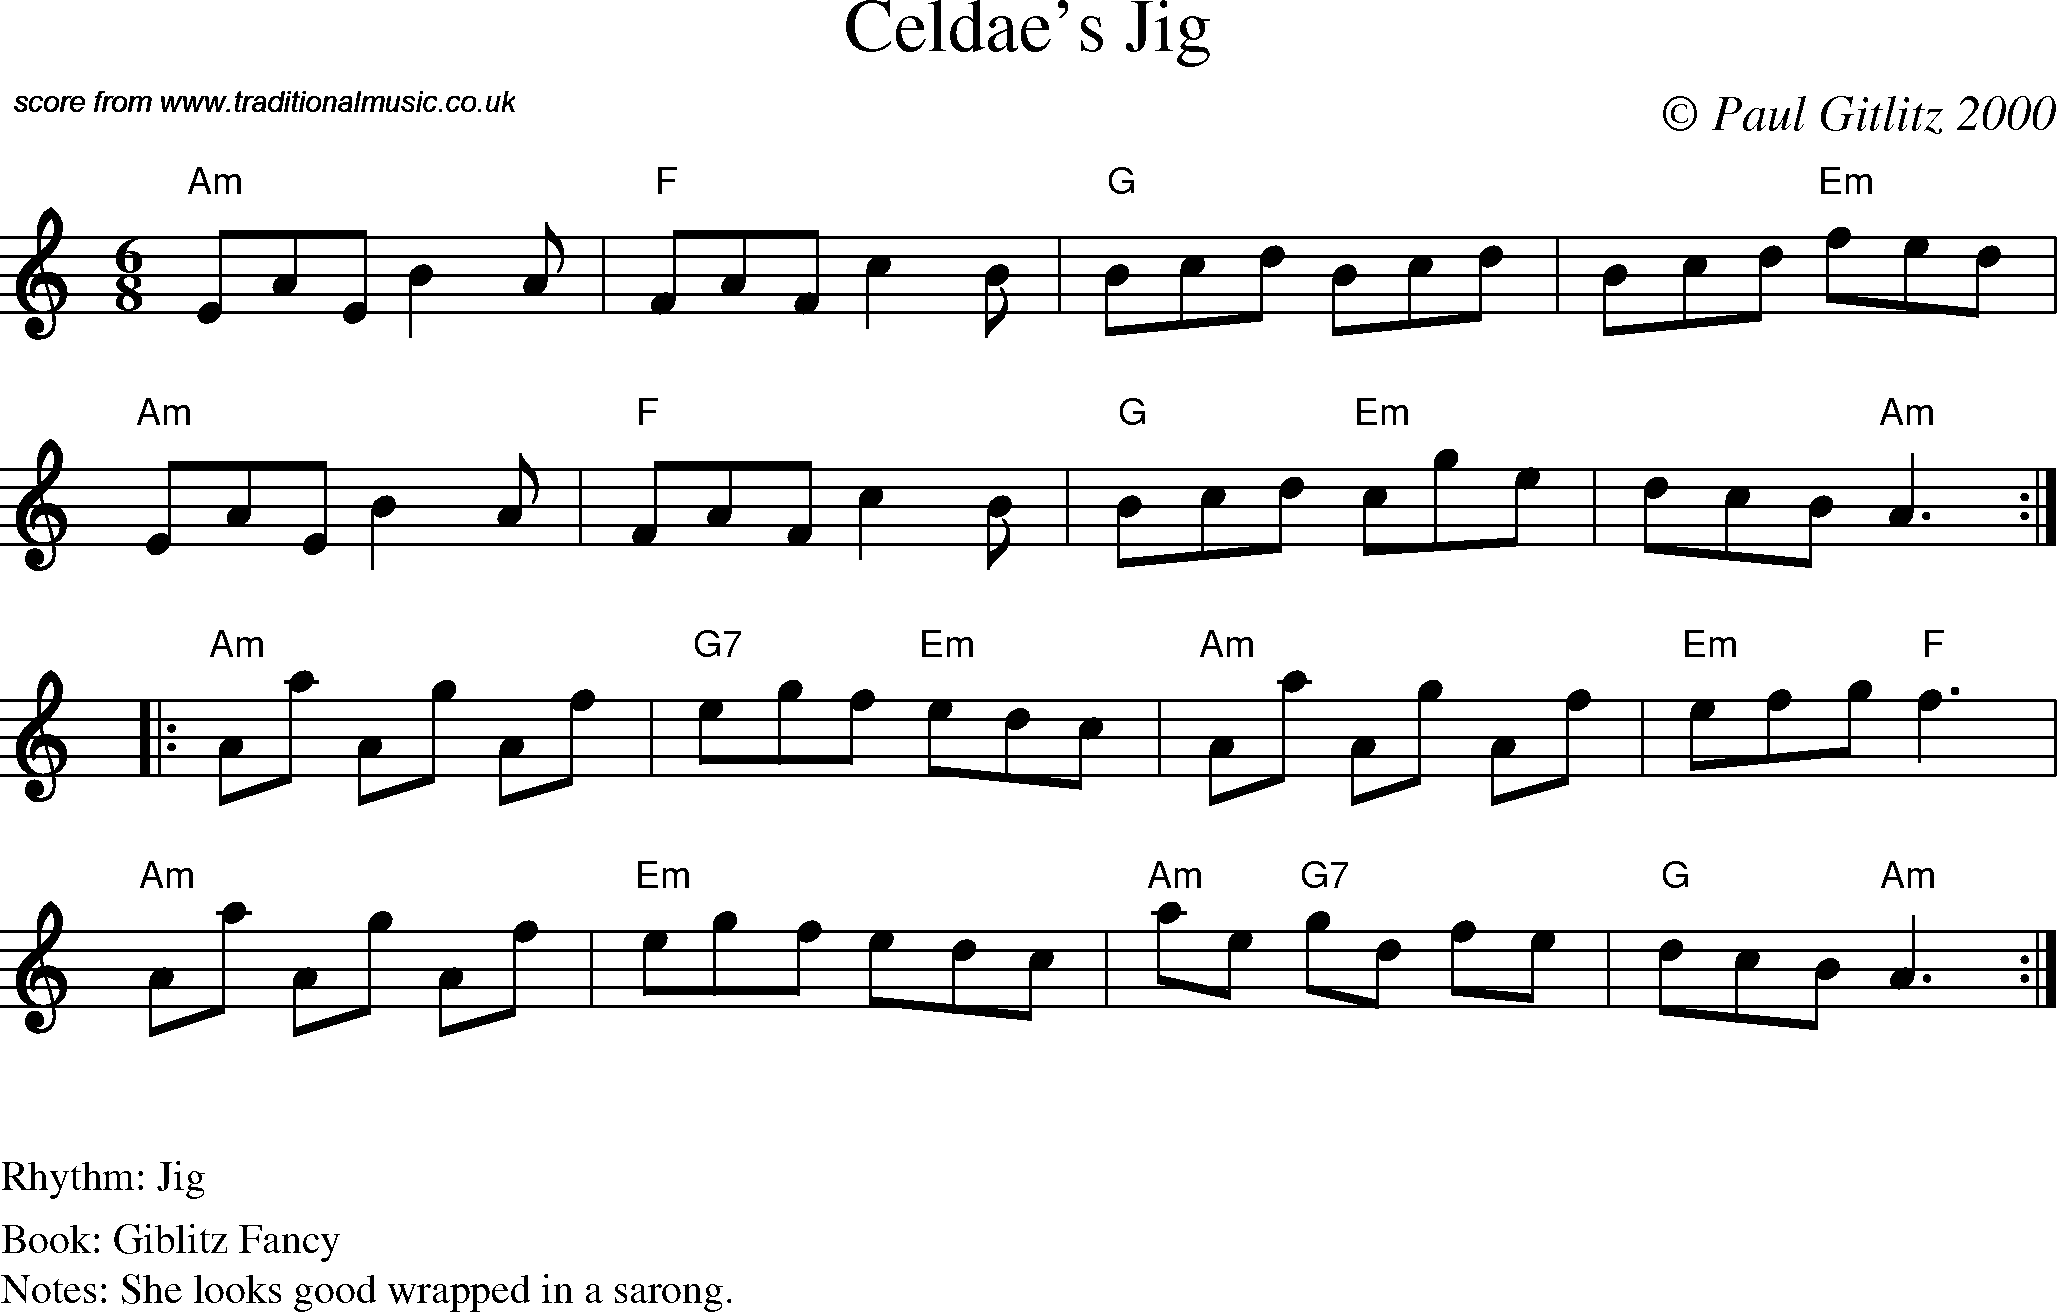 Sheet Music Score for Jig - Celdae's Jig